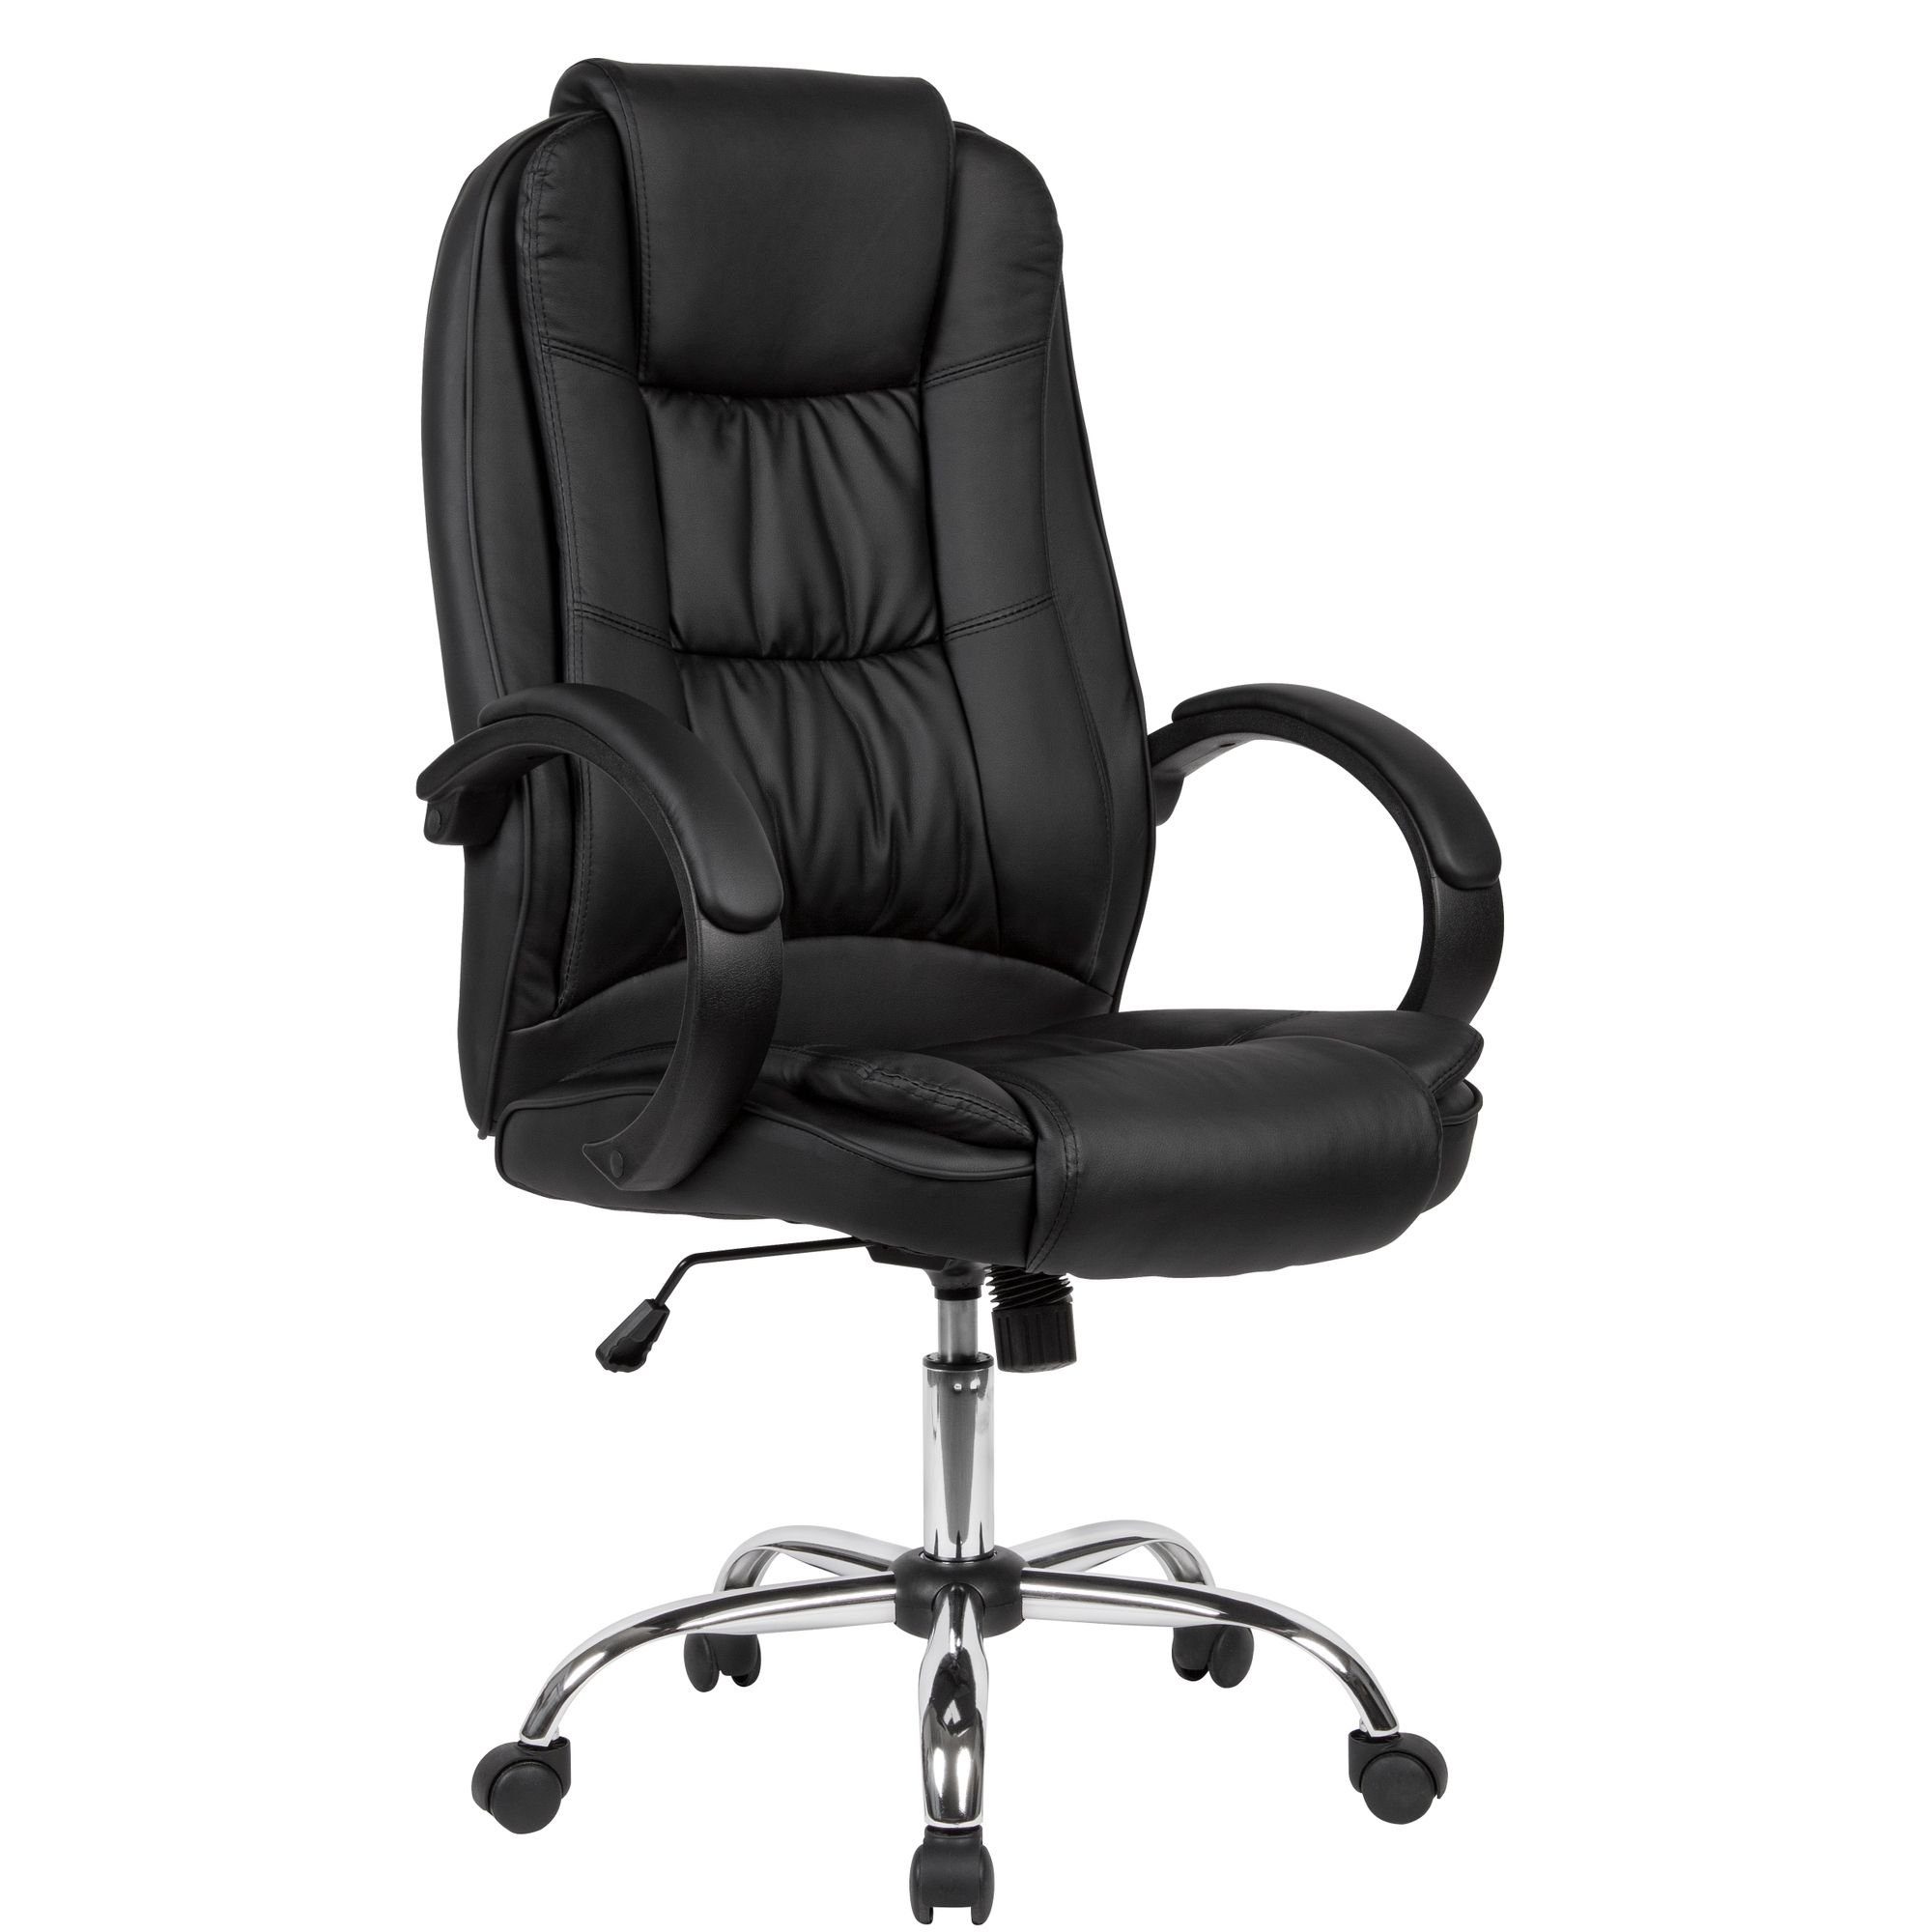 KADIMA DESIGN Chefsessel Arbeitssessel mit großer Sitzfläche & hoher Rückenlehne